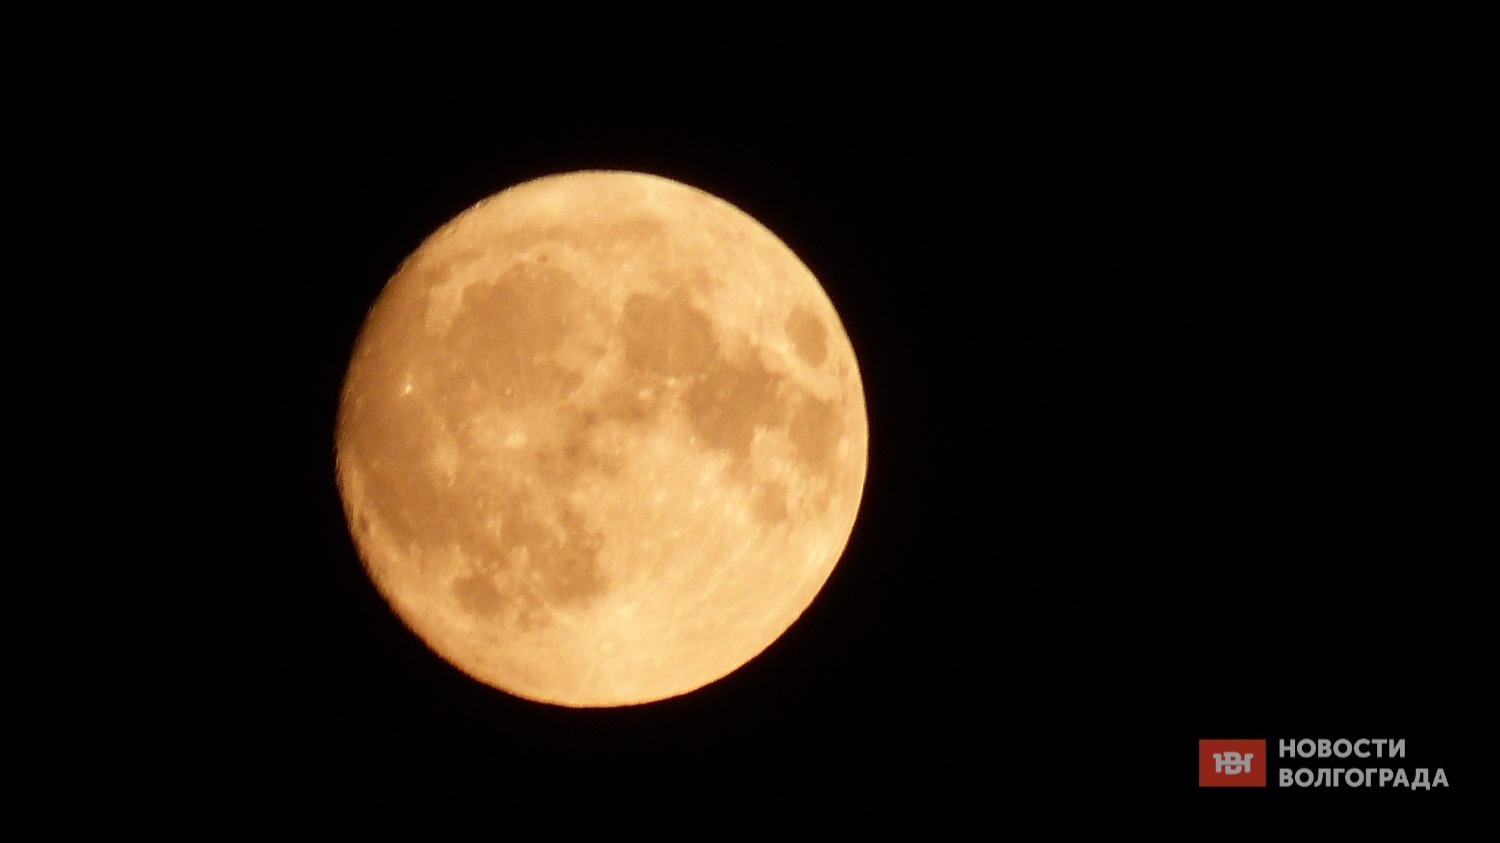 Осетровой такая Луна стала считаться из-за индийской традиции